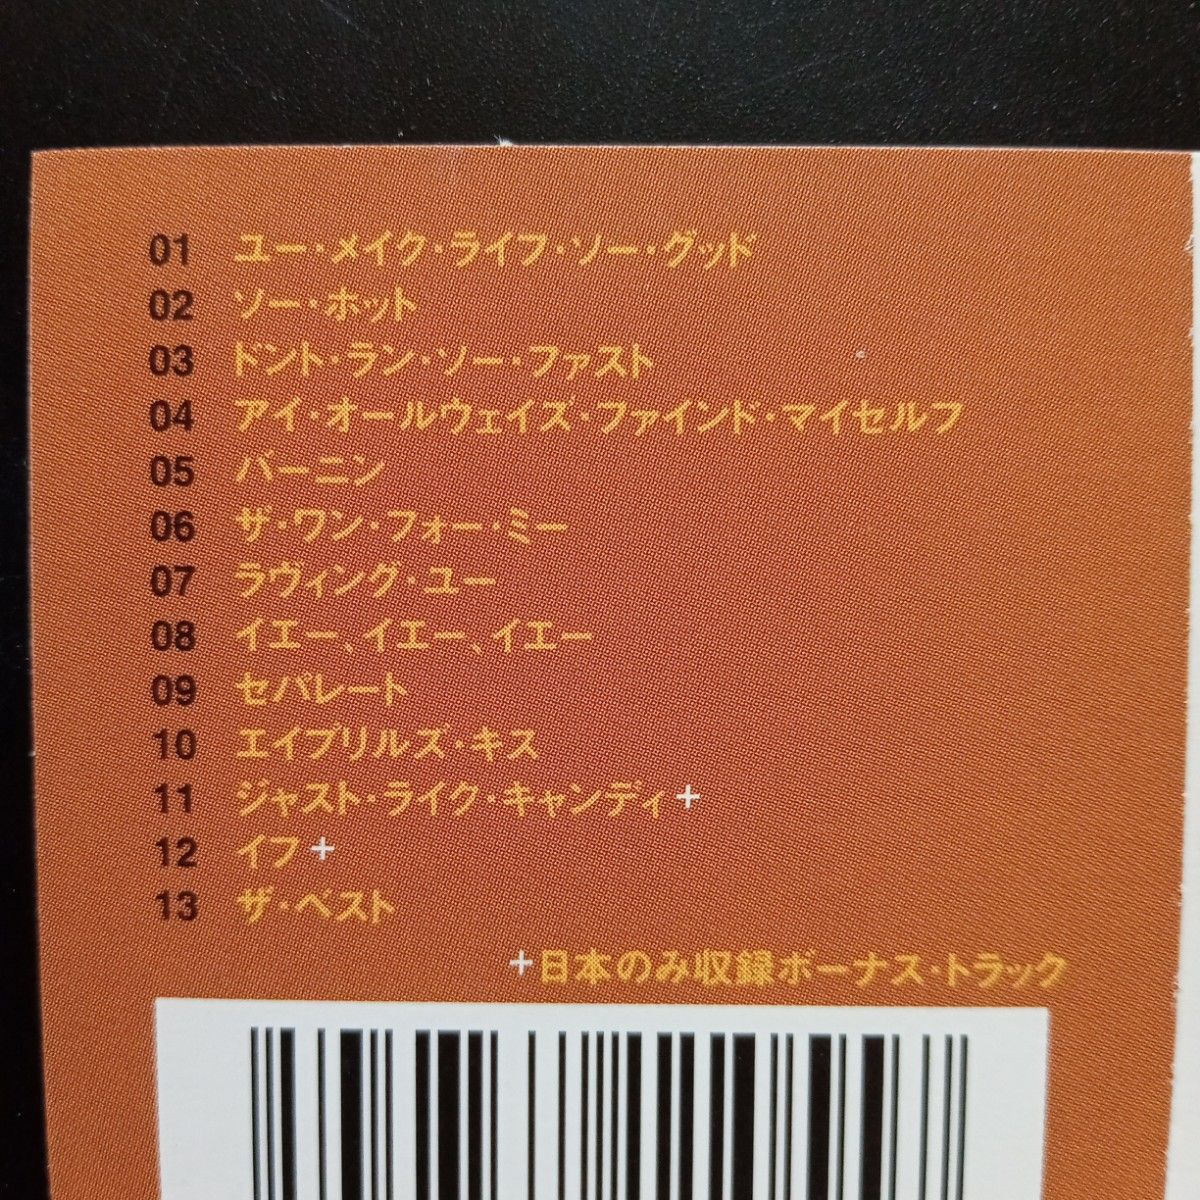 ラサーン・パターソン「アフター・ディス」日本盤。サード・アルバム。（ソウル）